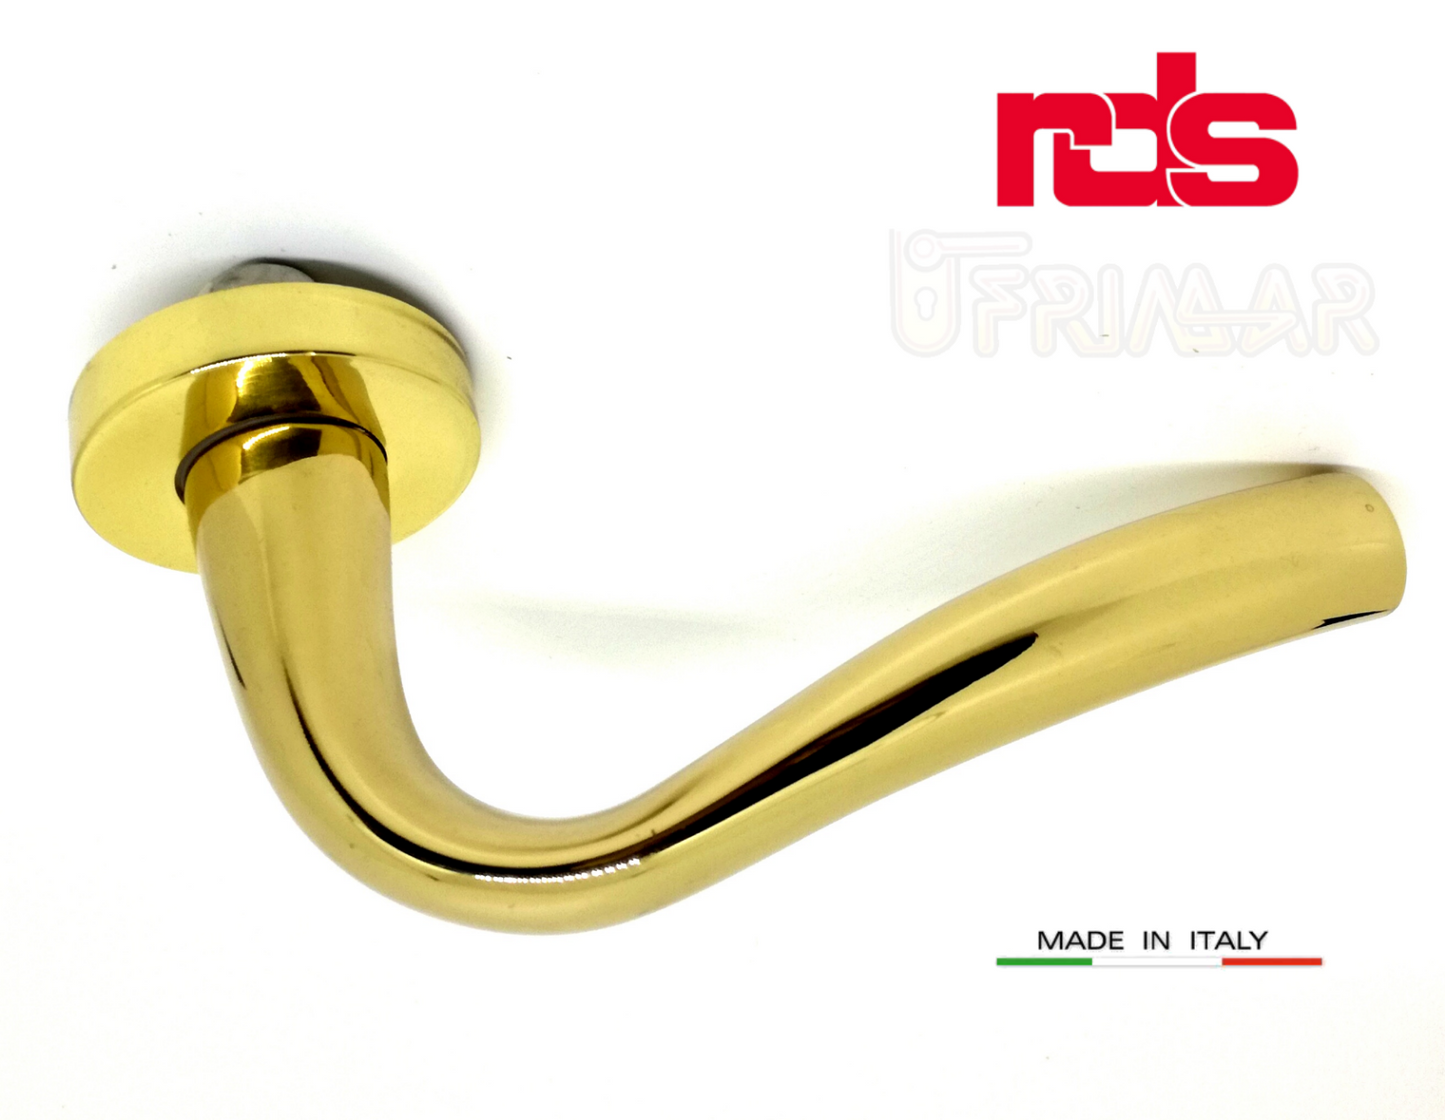 Maniglia RDS SIENA art. 0191 Oro lucido design Mauro Doimo maniglia per porta